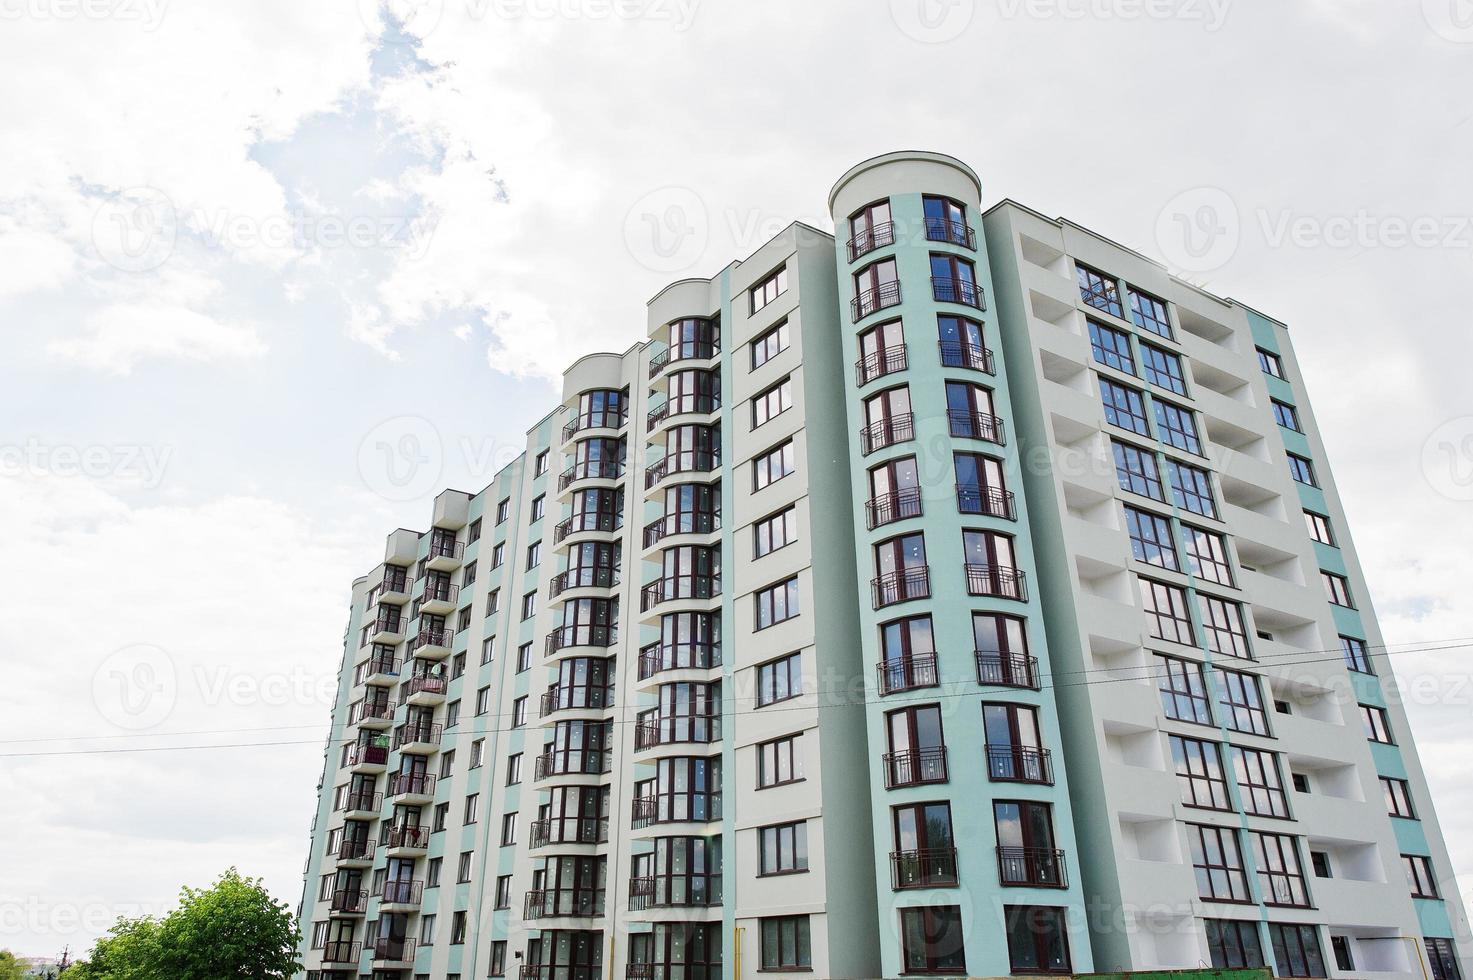 balcón de la nueva y moderna casa residencial turquesa de varios pisos en una zona residencial en un cielo azul soleado. foto